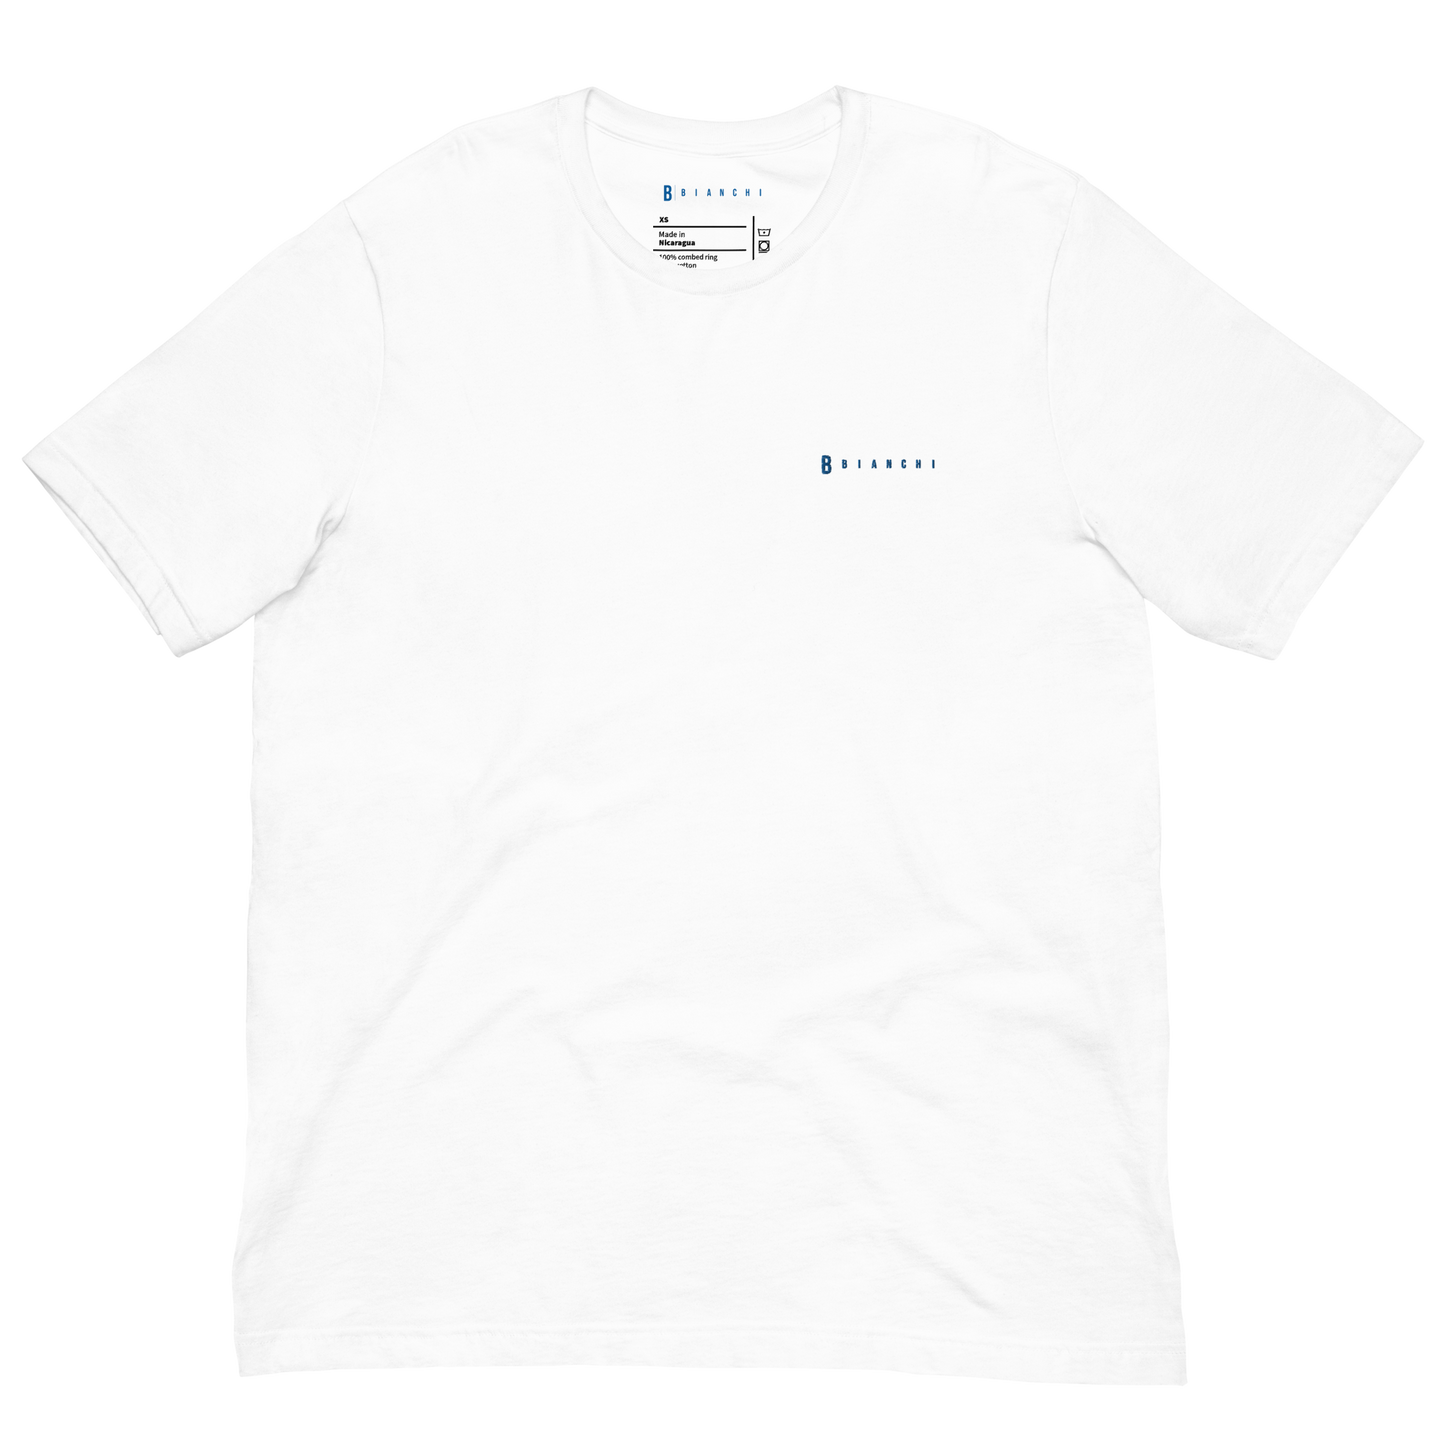 Bianchi T-Shirt